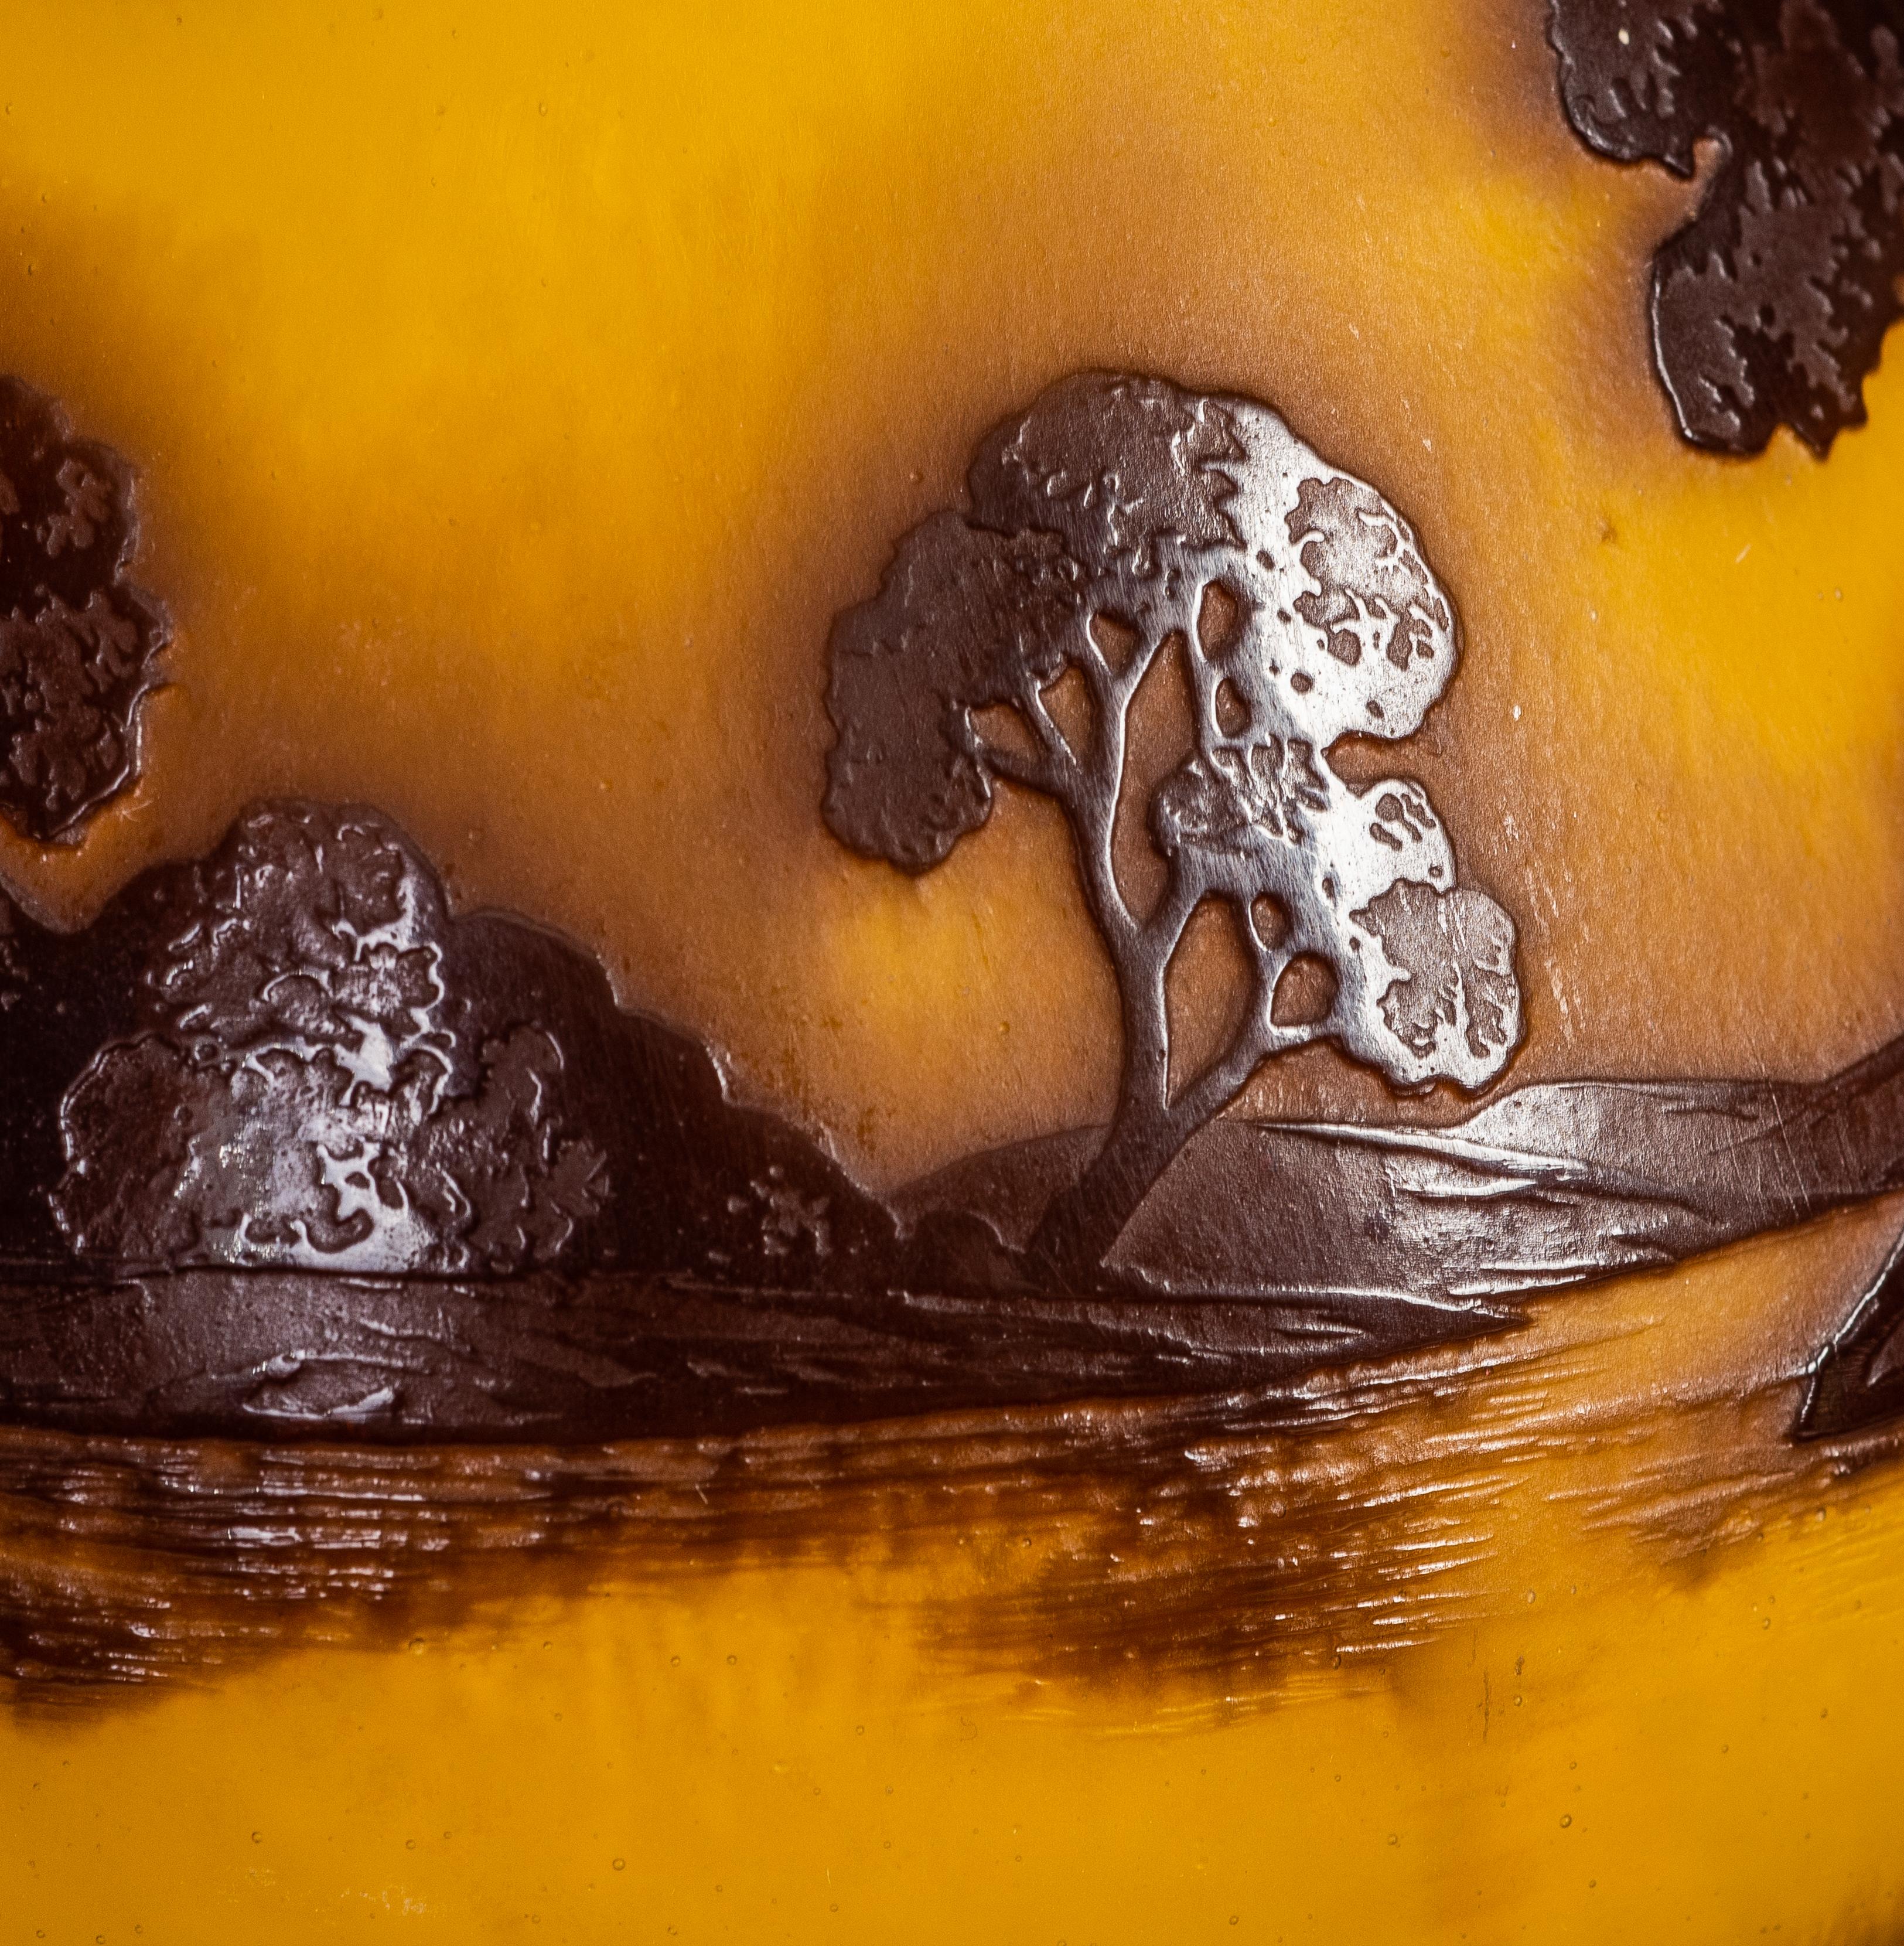 André Delatte
un vase en verre camée décoré à l'intérieur,
France, vers 1920
décoré d'arbres sur un fond jaune,
signé A Delatte Nancy
Dimensions :
Hauteur
8.25 in. (20.9 cm)
Largeur
6 in. (15.2 cm).